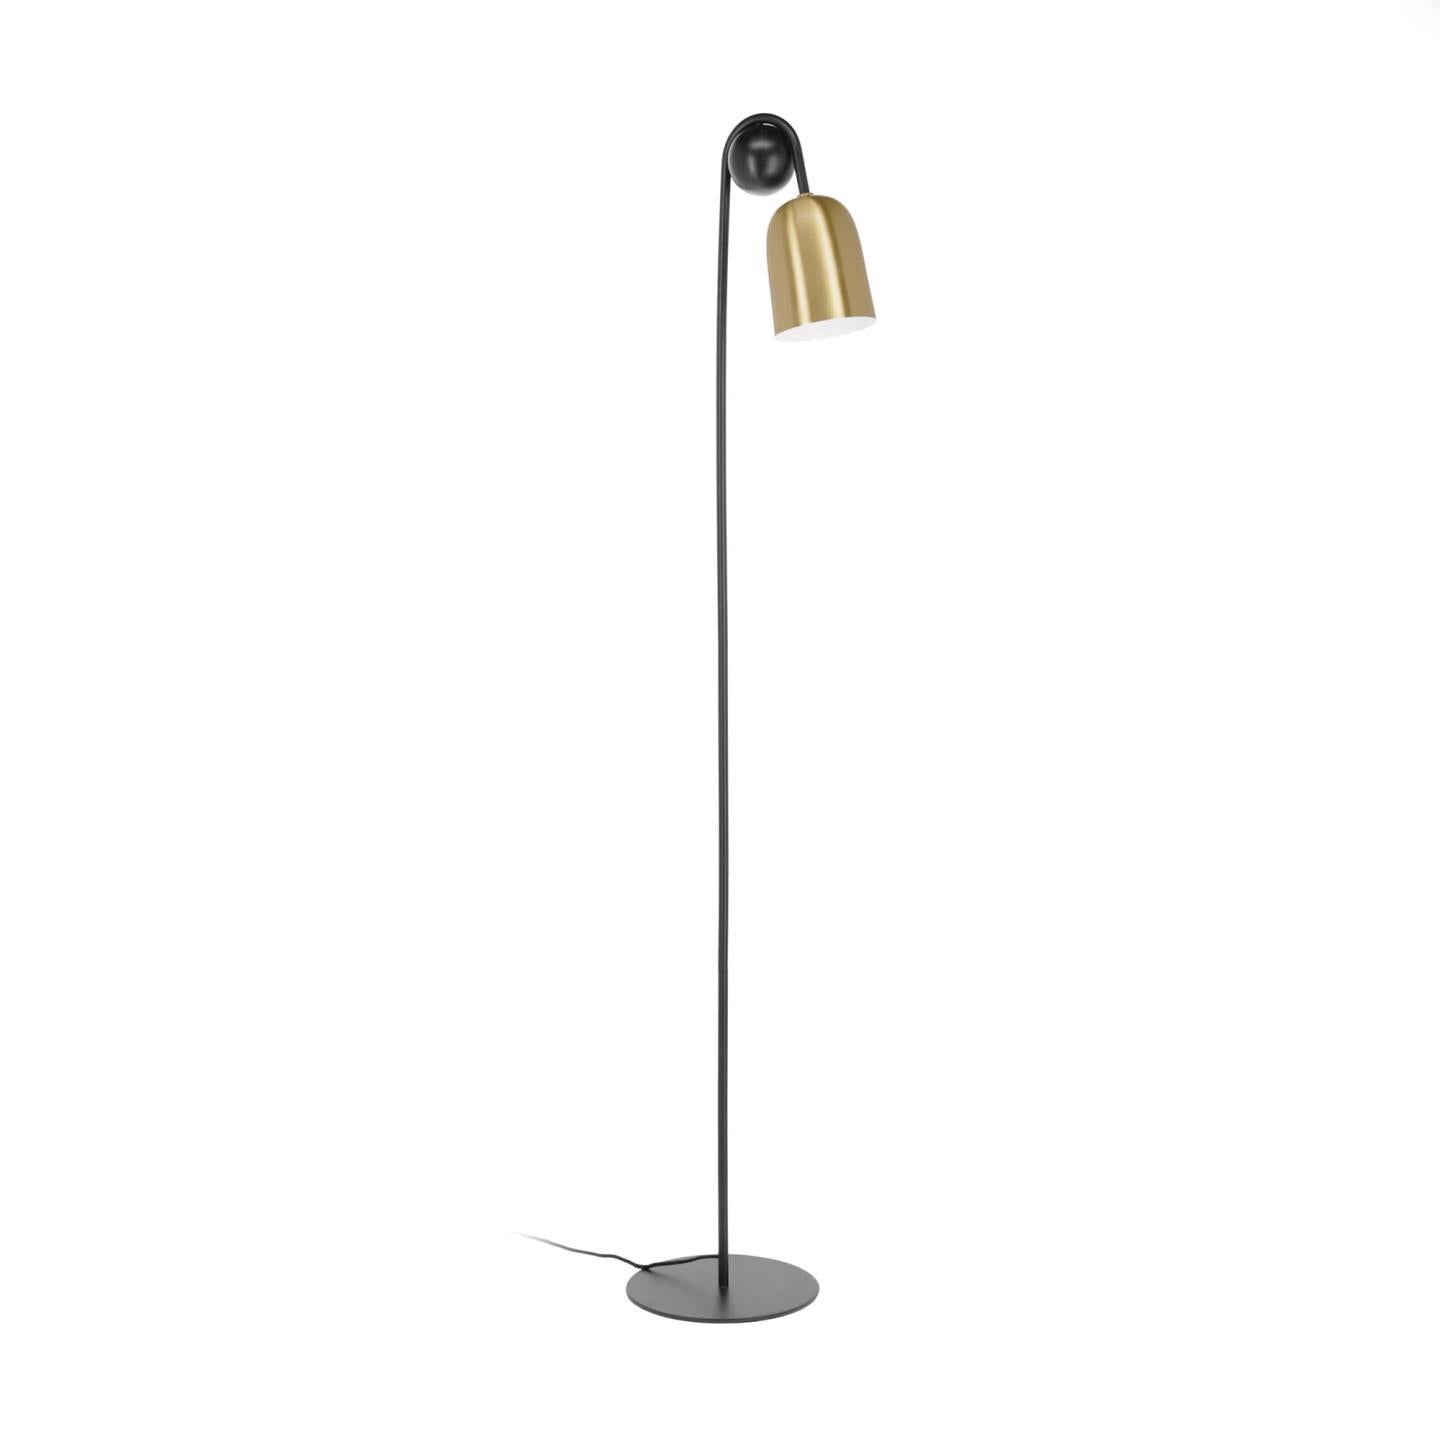 Natsumi metal and wood floor lamp